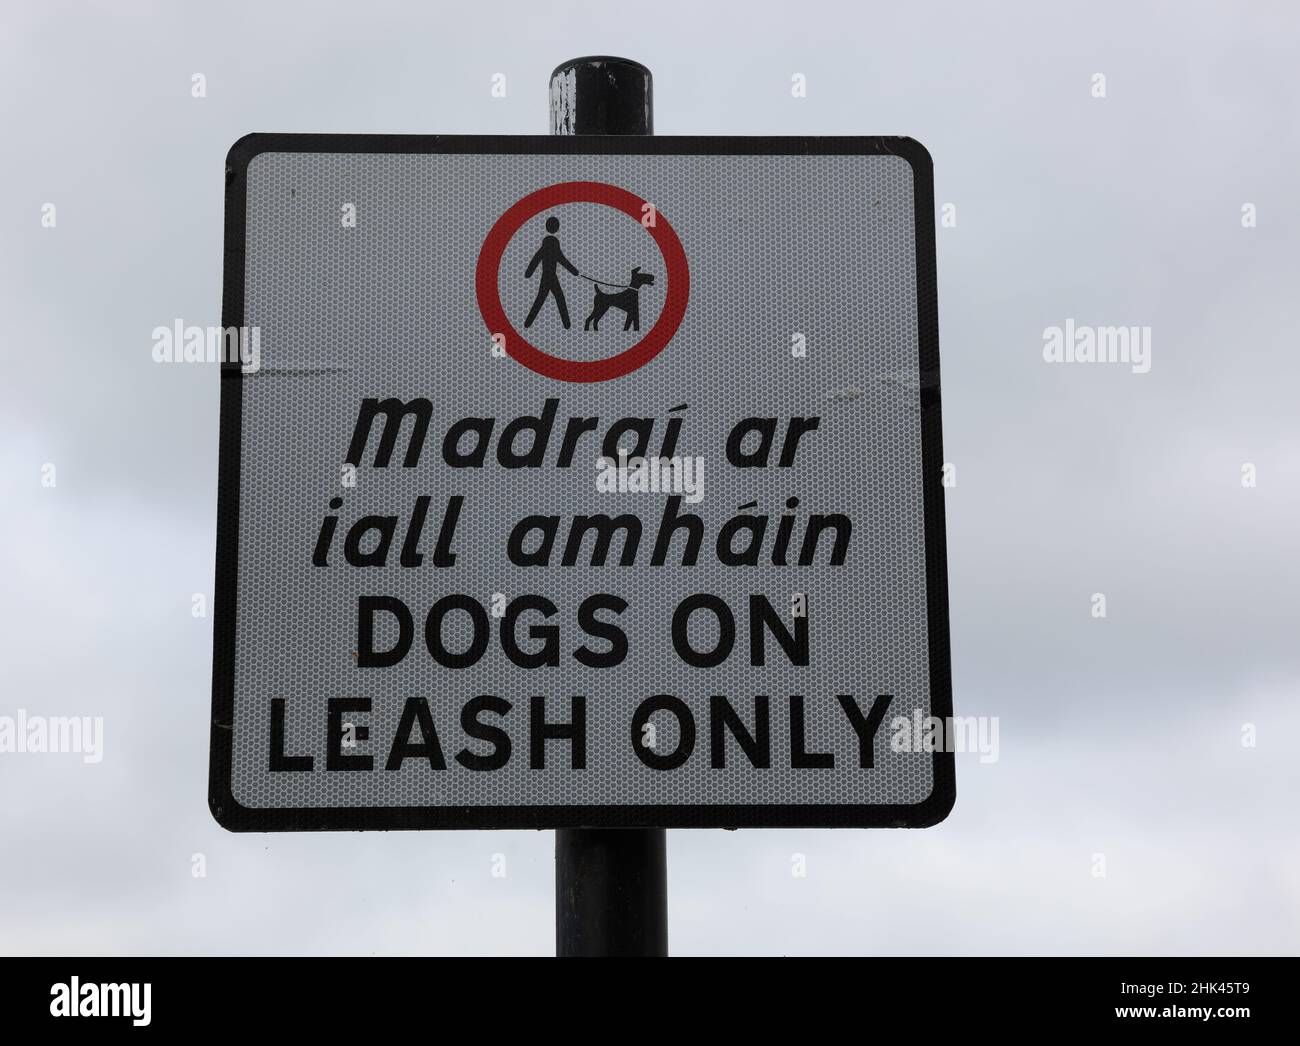 Zweisprachiges Schild, englisch und gälisch, in Navan, Irland. Hunde an die Leine nehmen / Sign dogs on leash only in english and Gaelic language, s Foto Stock